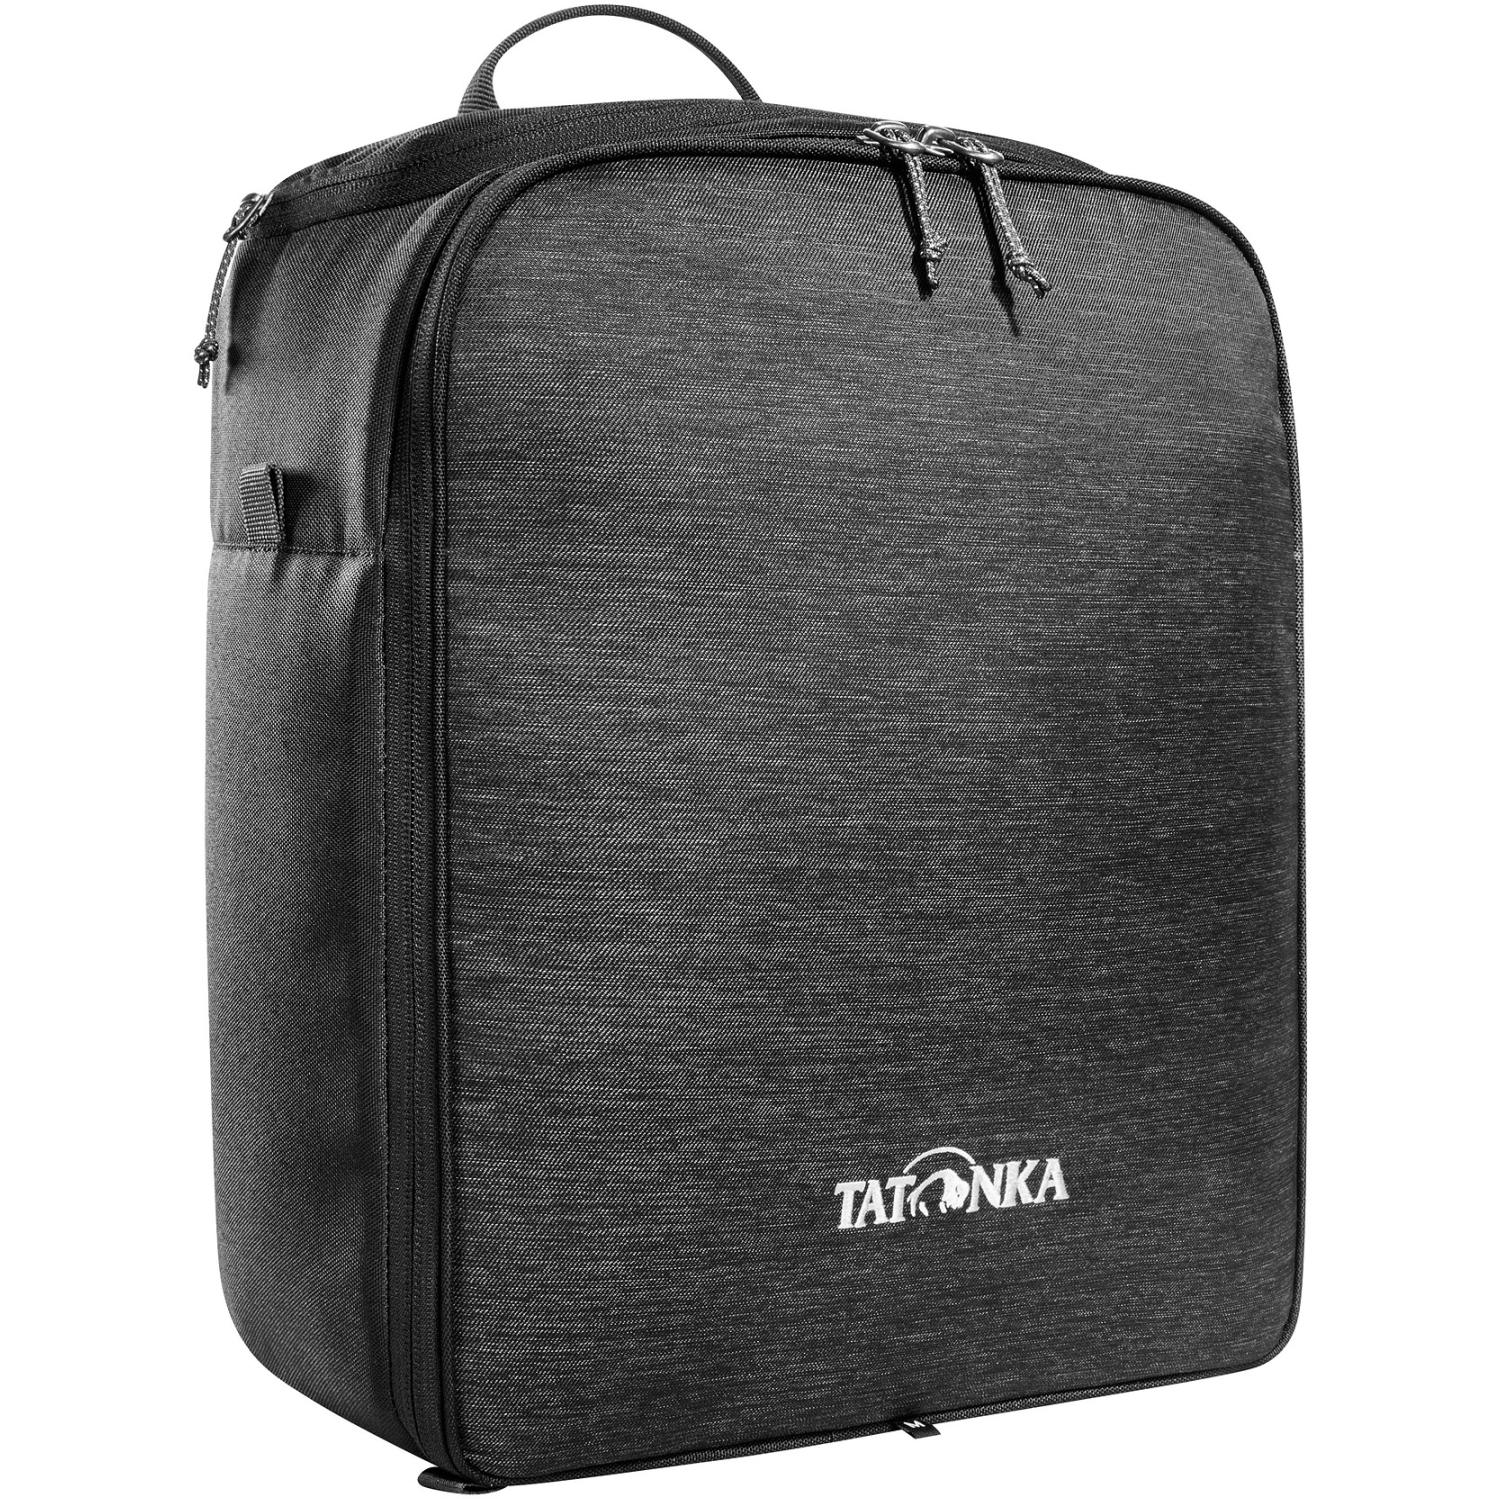 Produktbild von Tatonka Cooler Bag M - Kühltasche - off black